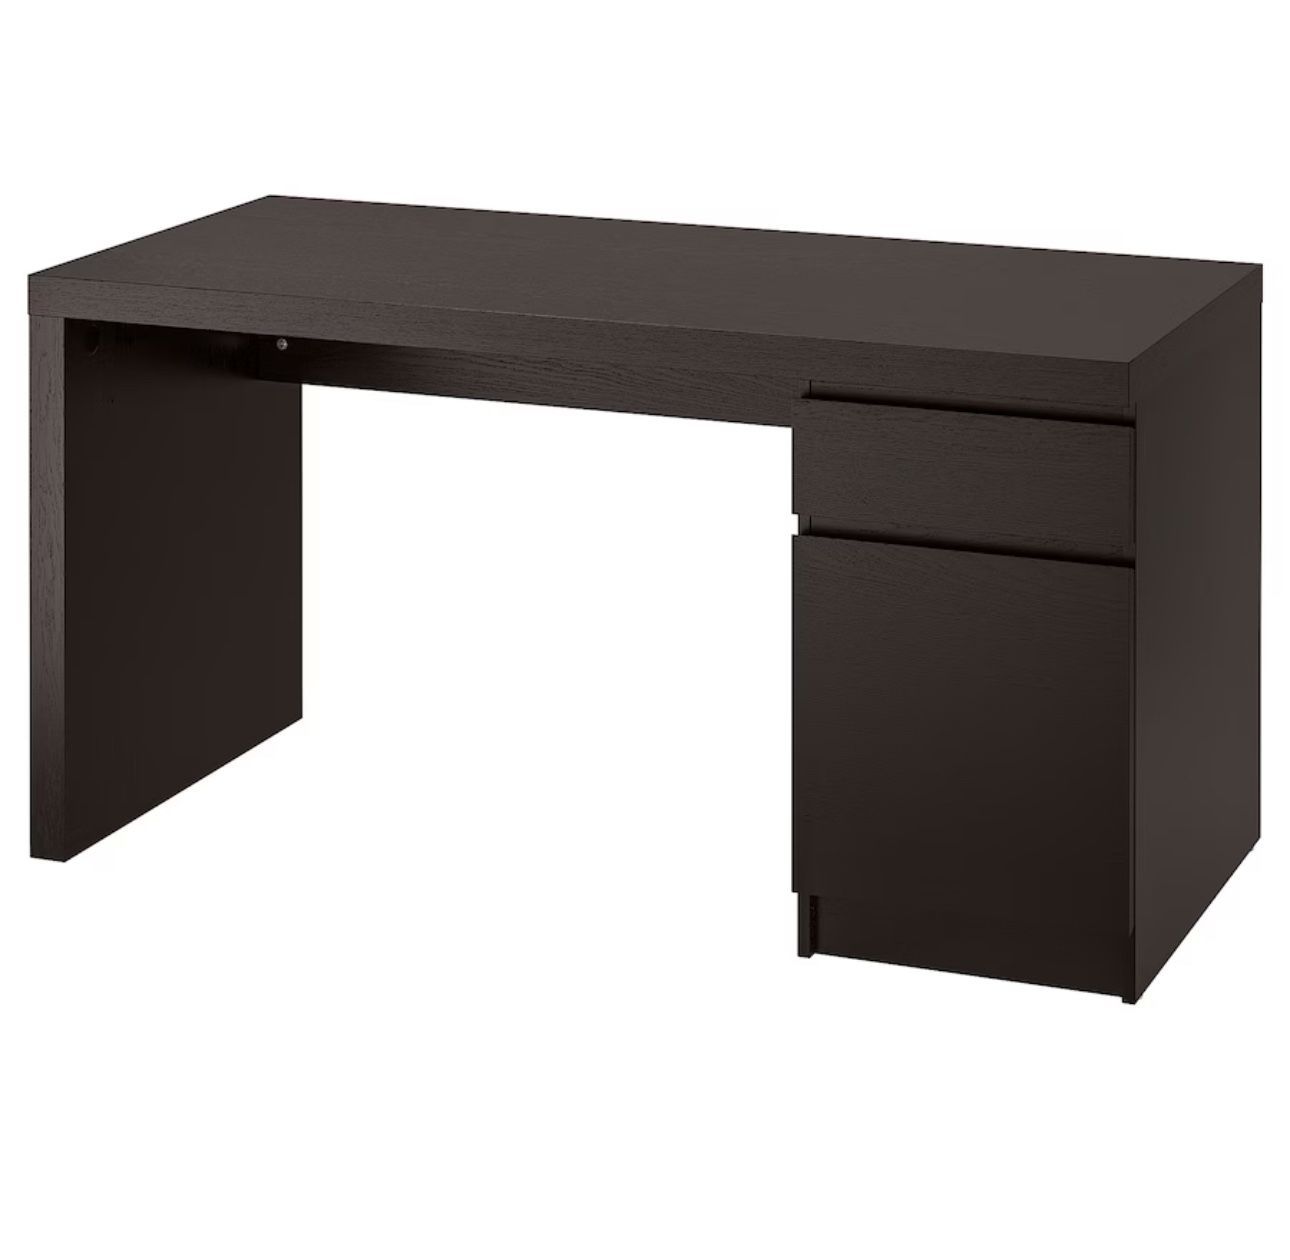 IKEA Malm Desk Black-Brown